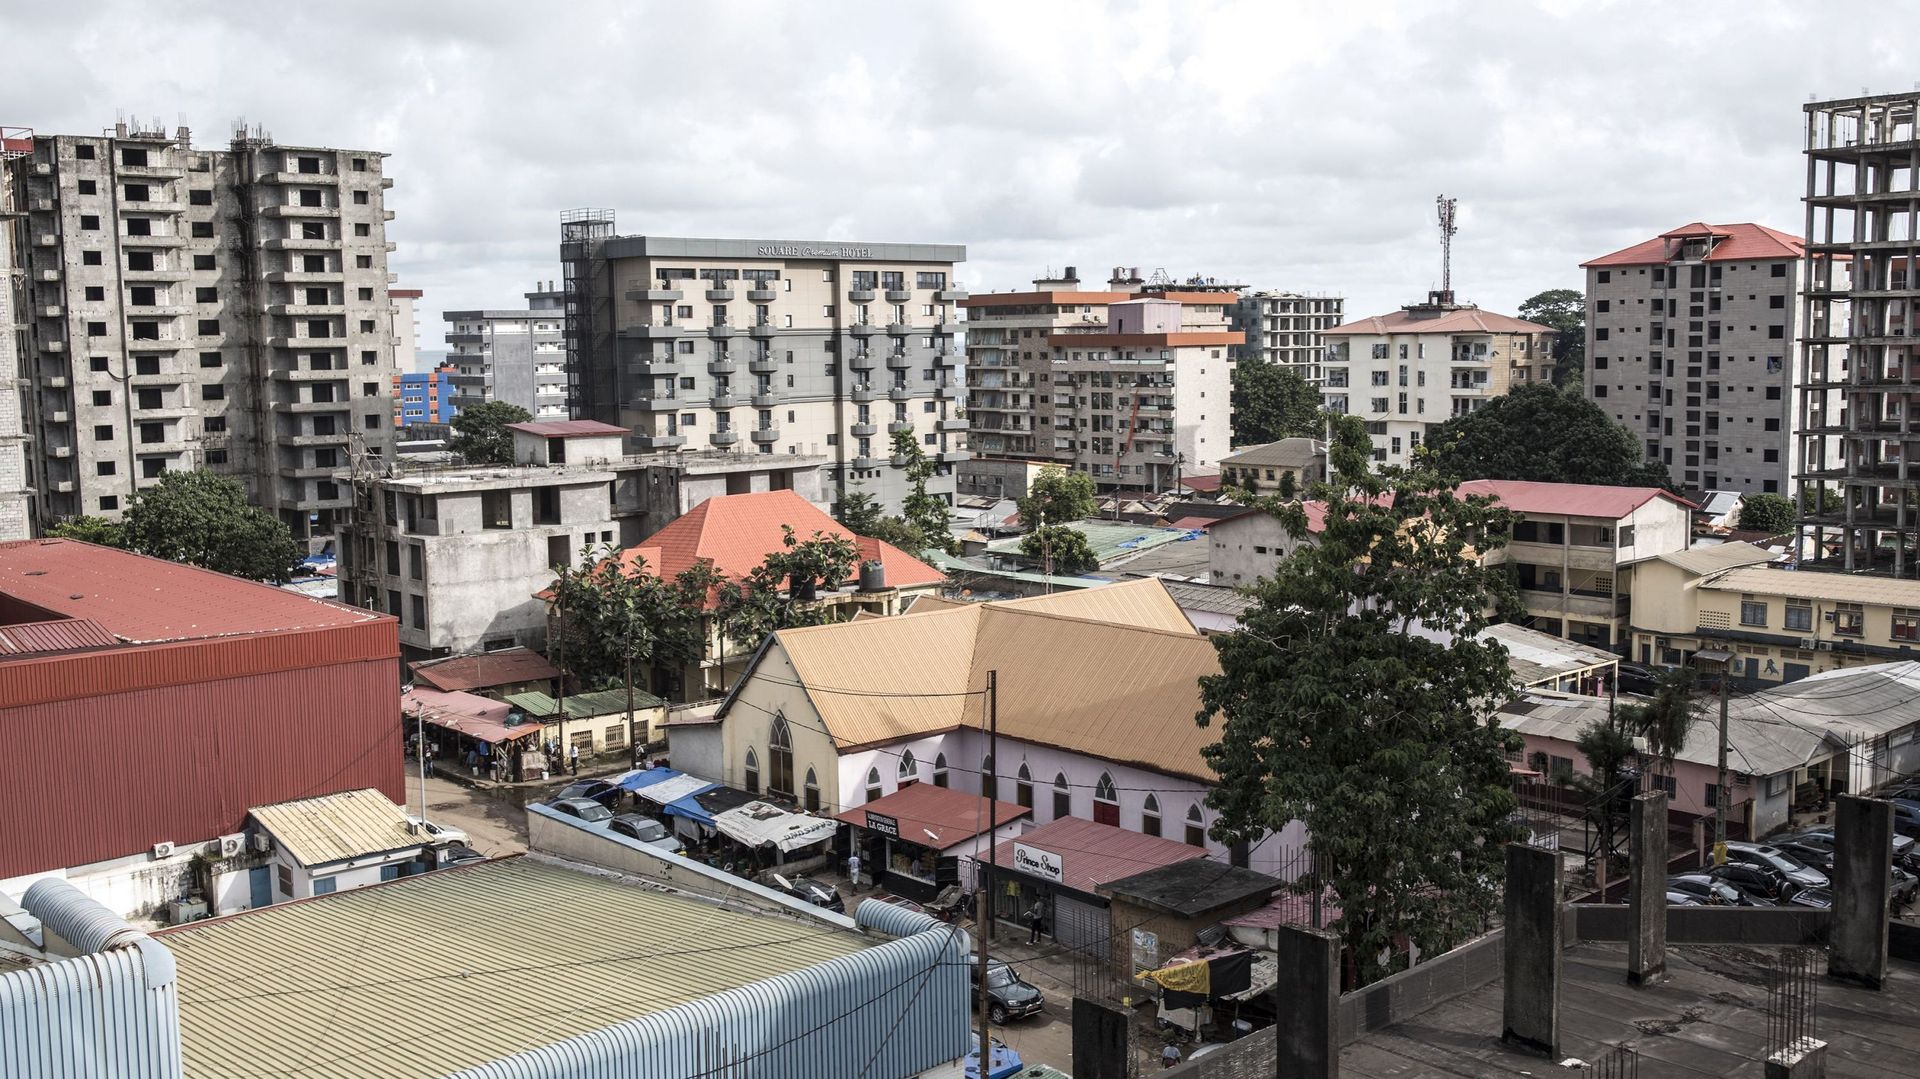 Le centre-ville de Conakry, la capitale de la Guinée, en octobre 2020